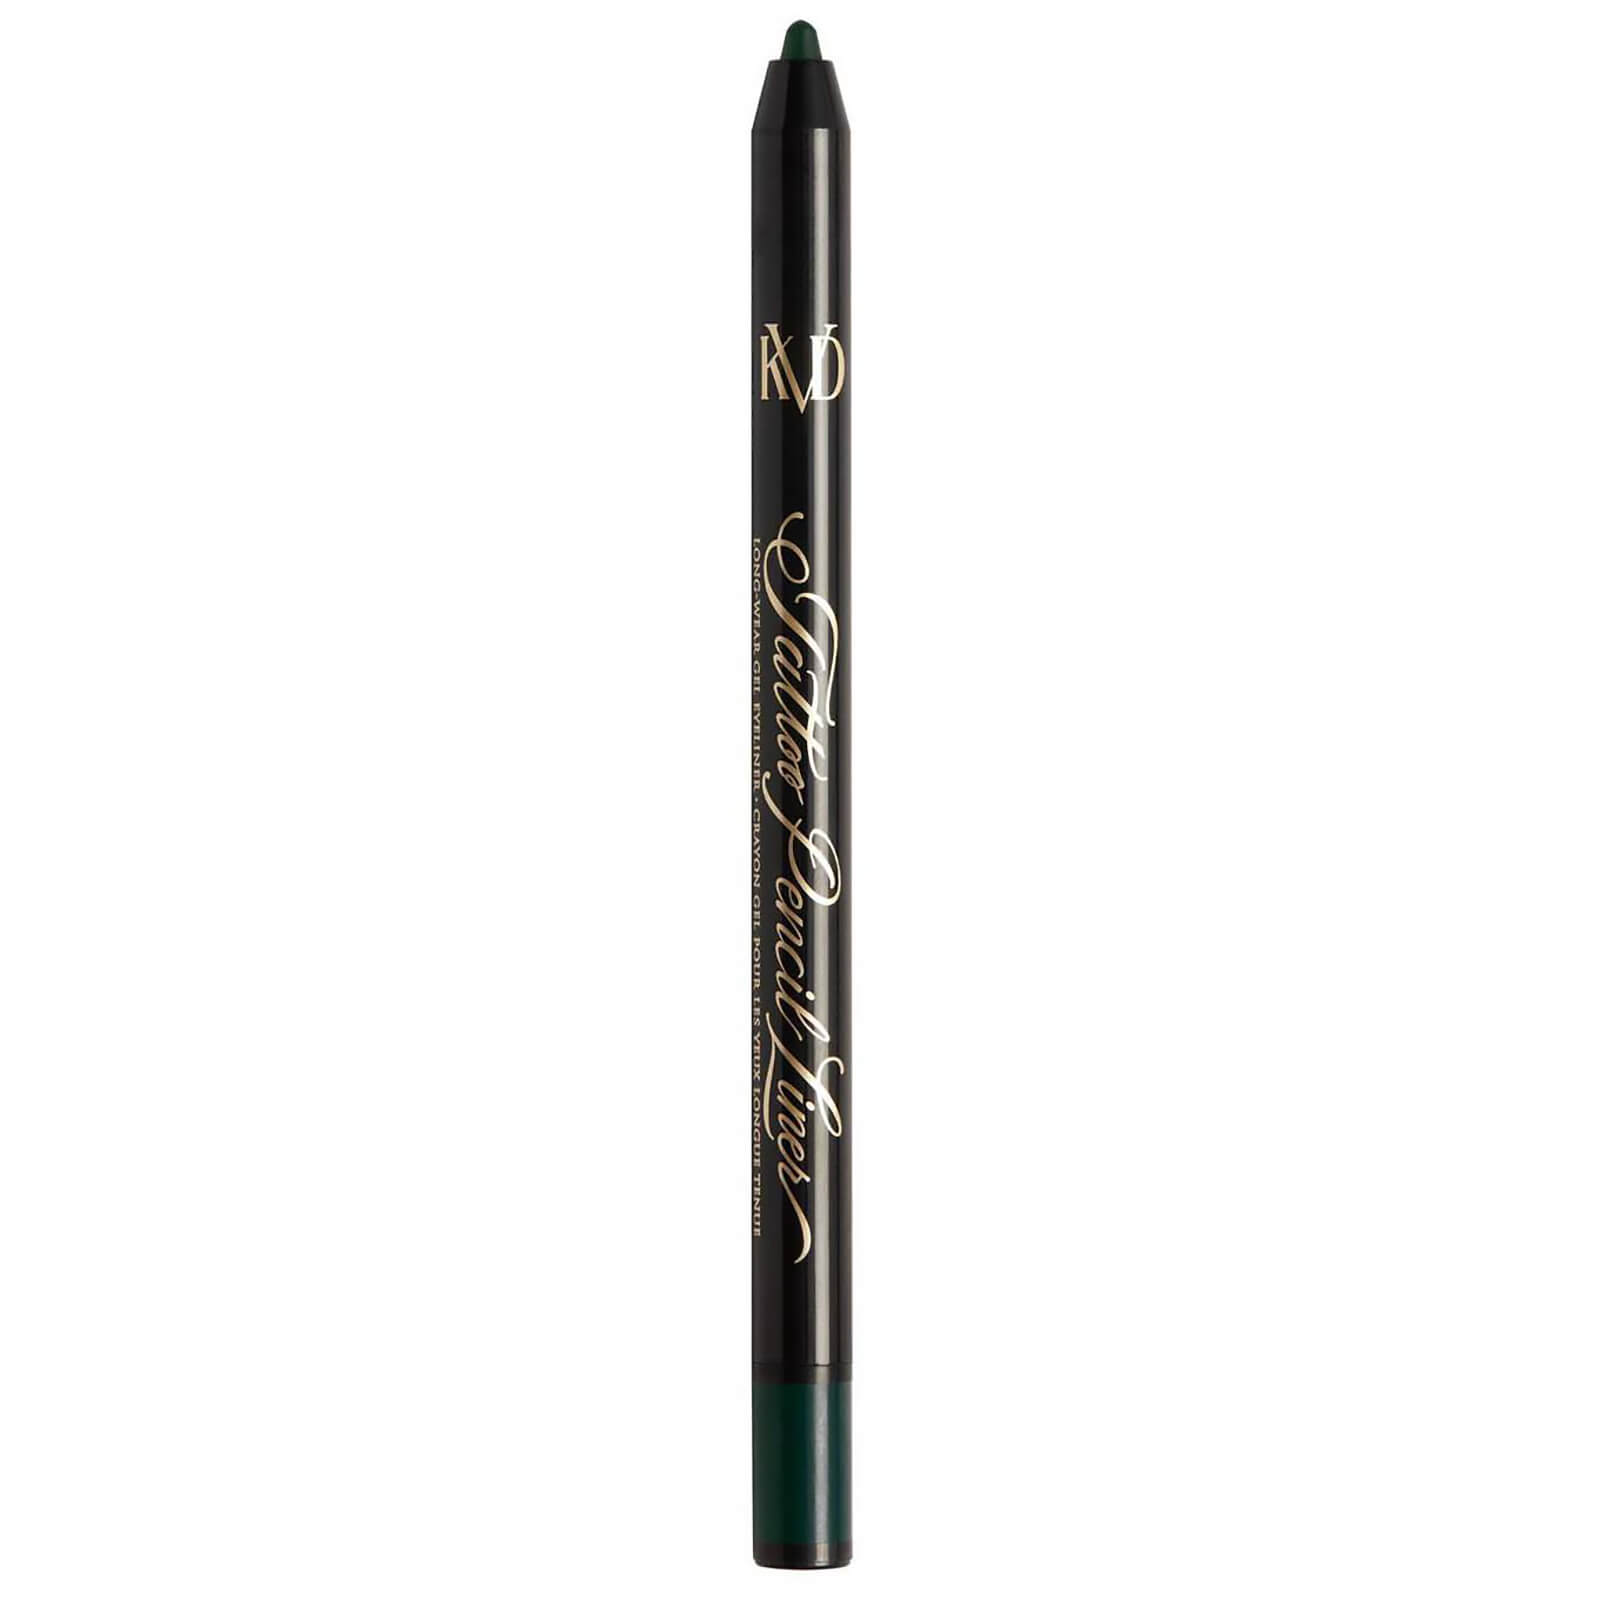 KVD Beauty Tattoo Pencil Liner Long-Wear Gel Eyeliner 0.5g (Various Shades) - Verdetta Green 60